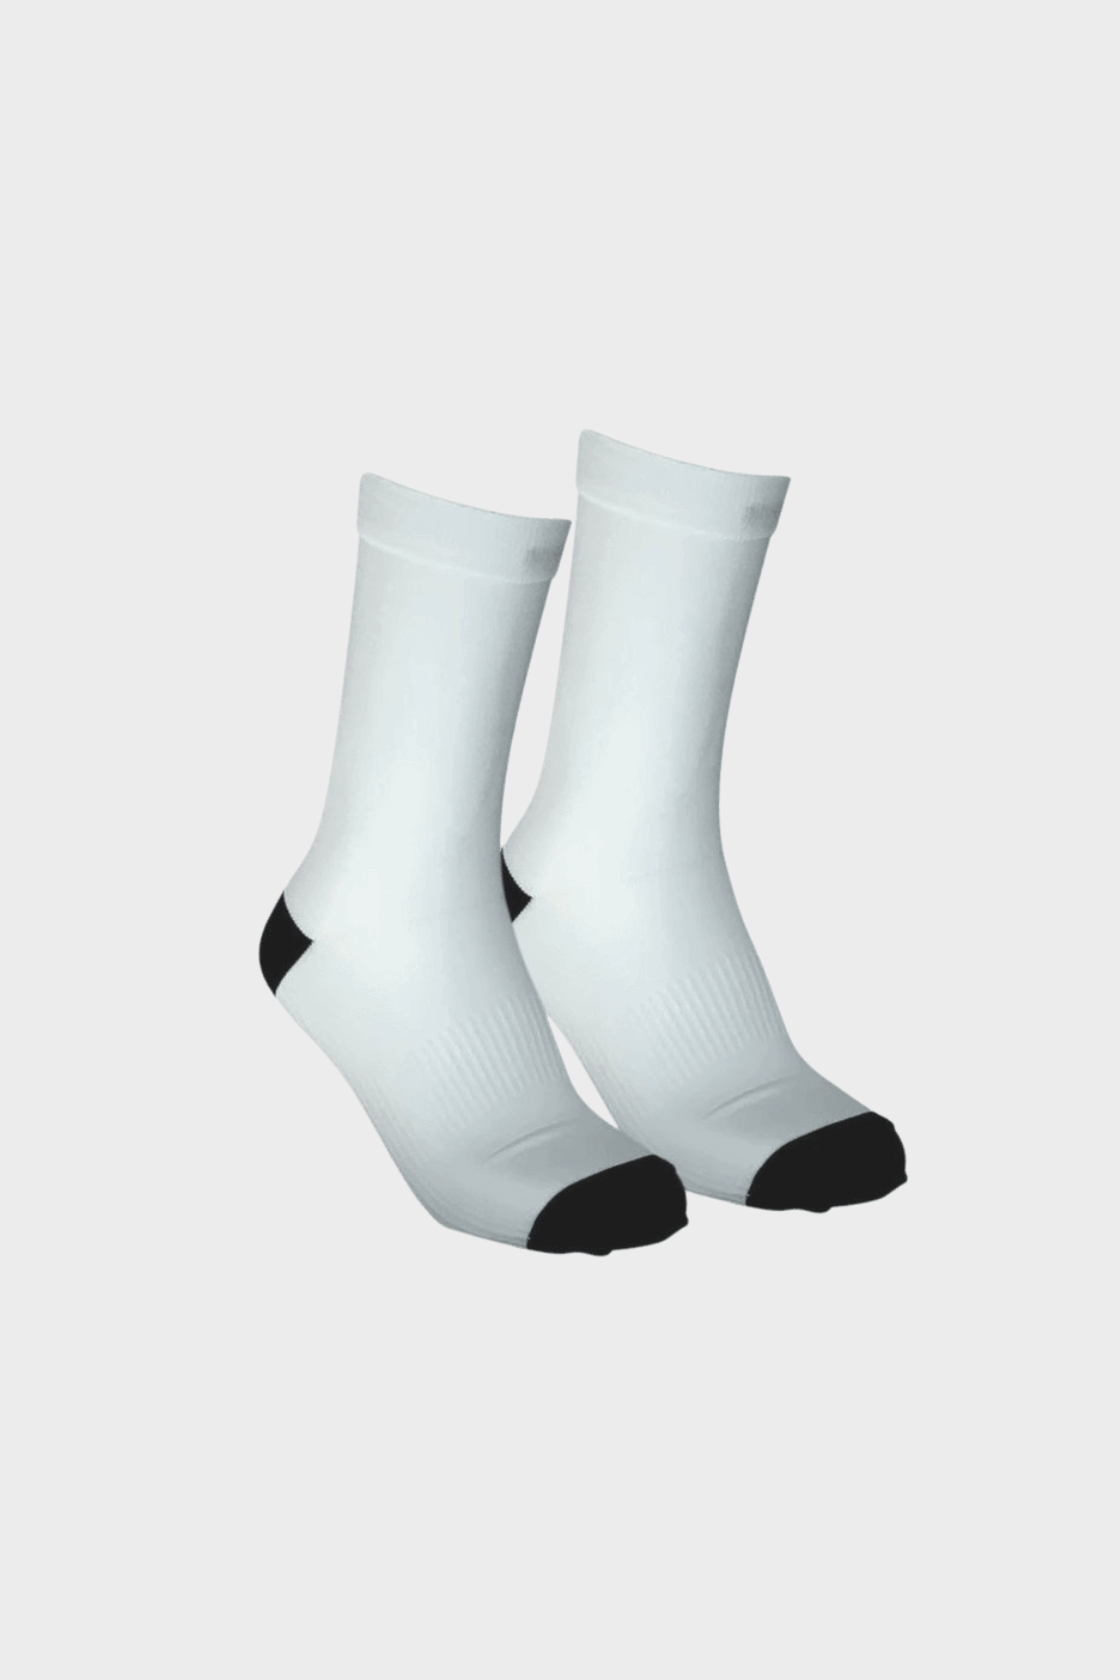 Rocca Sock White Crew Compression Socks